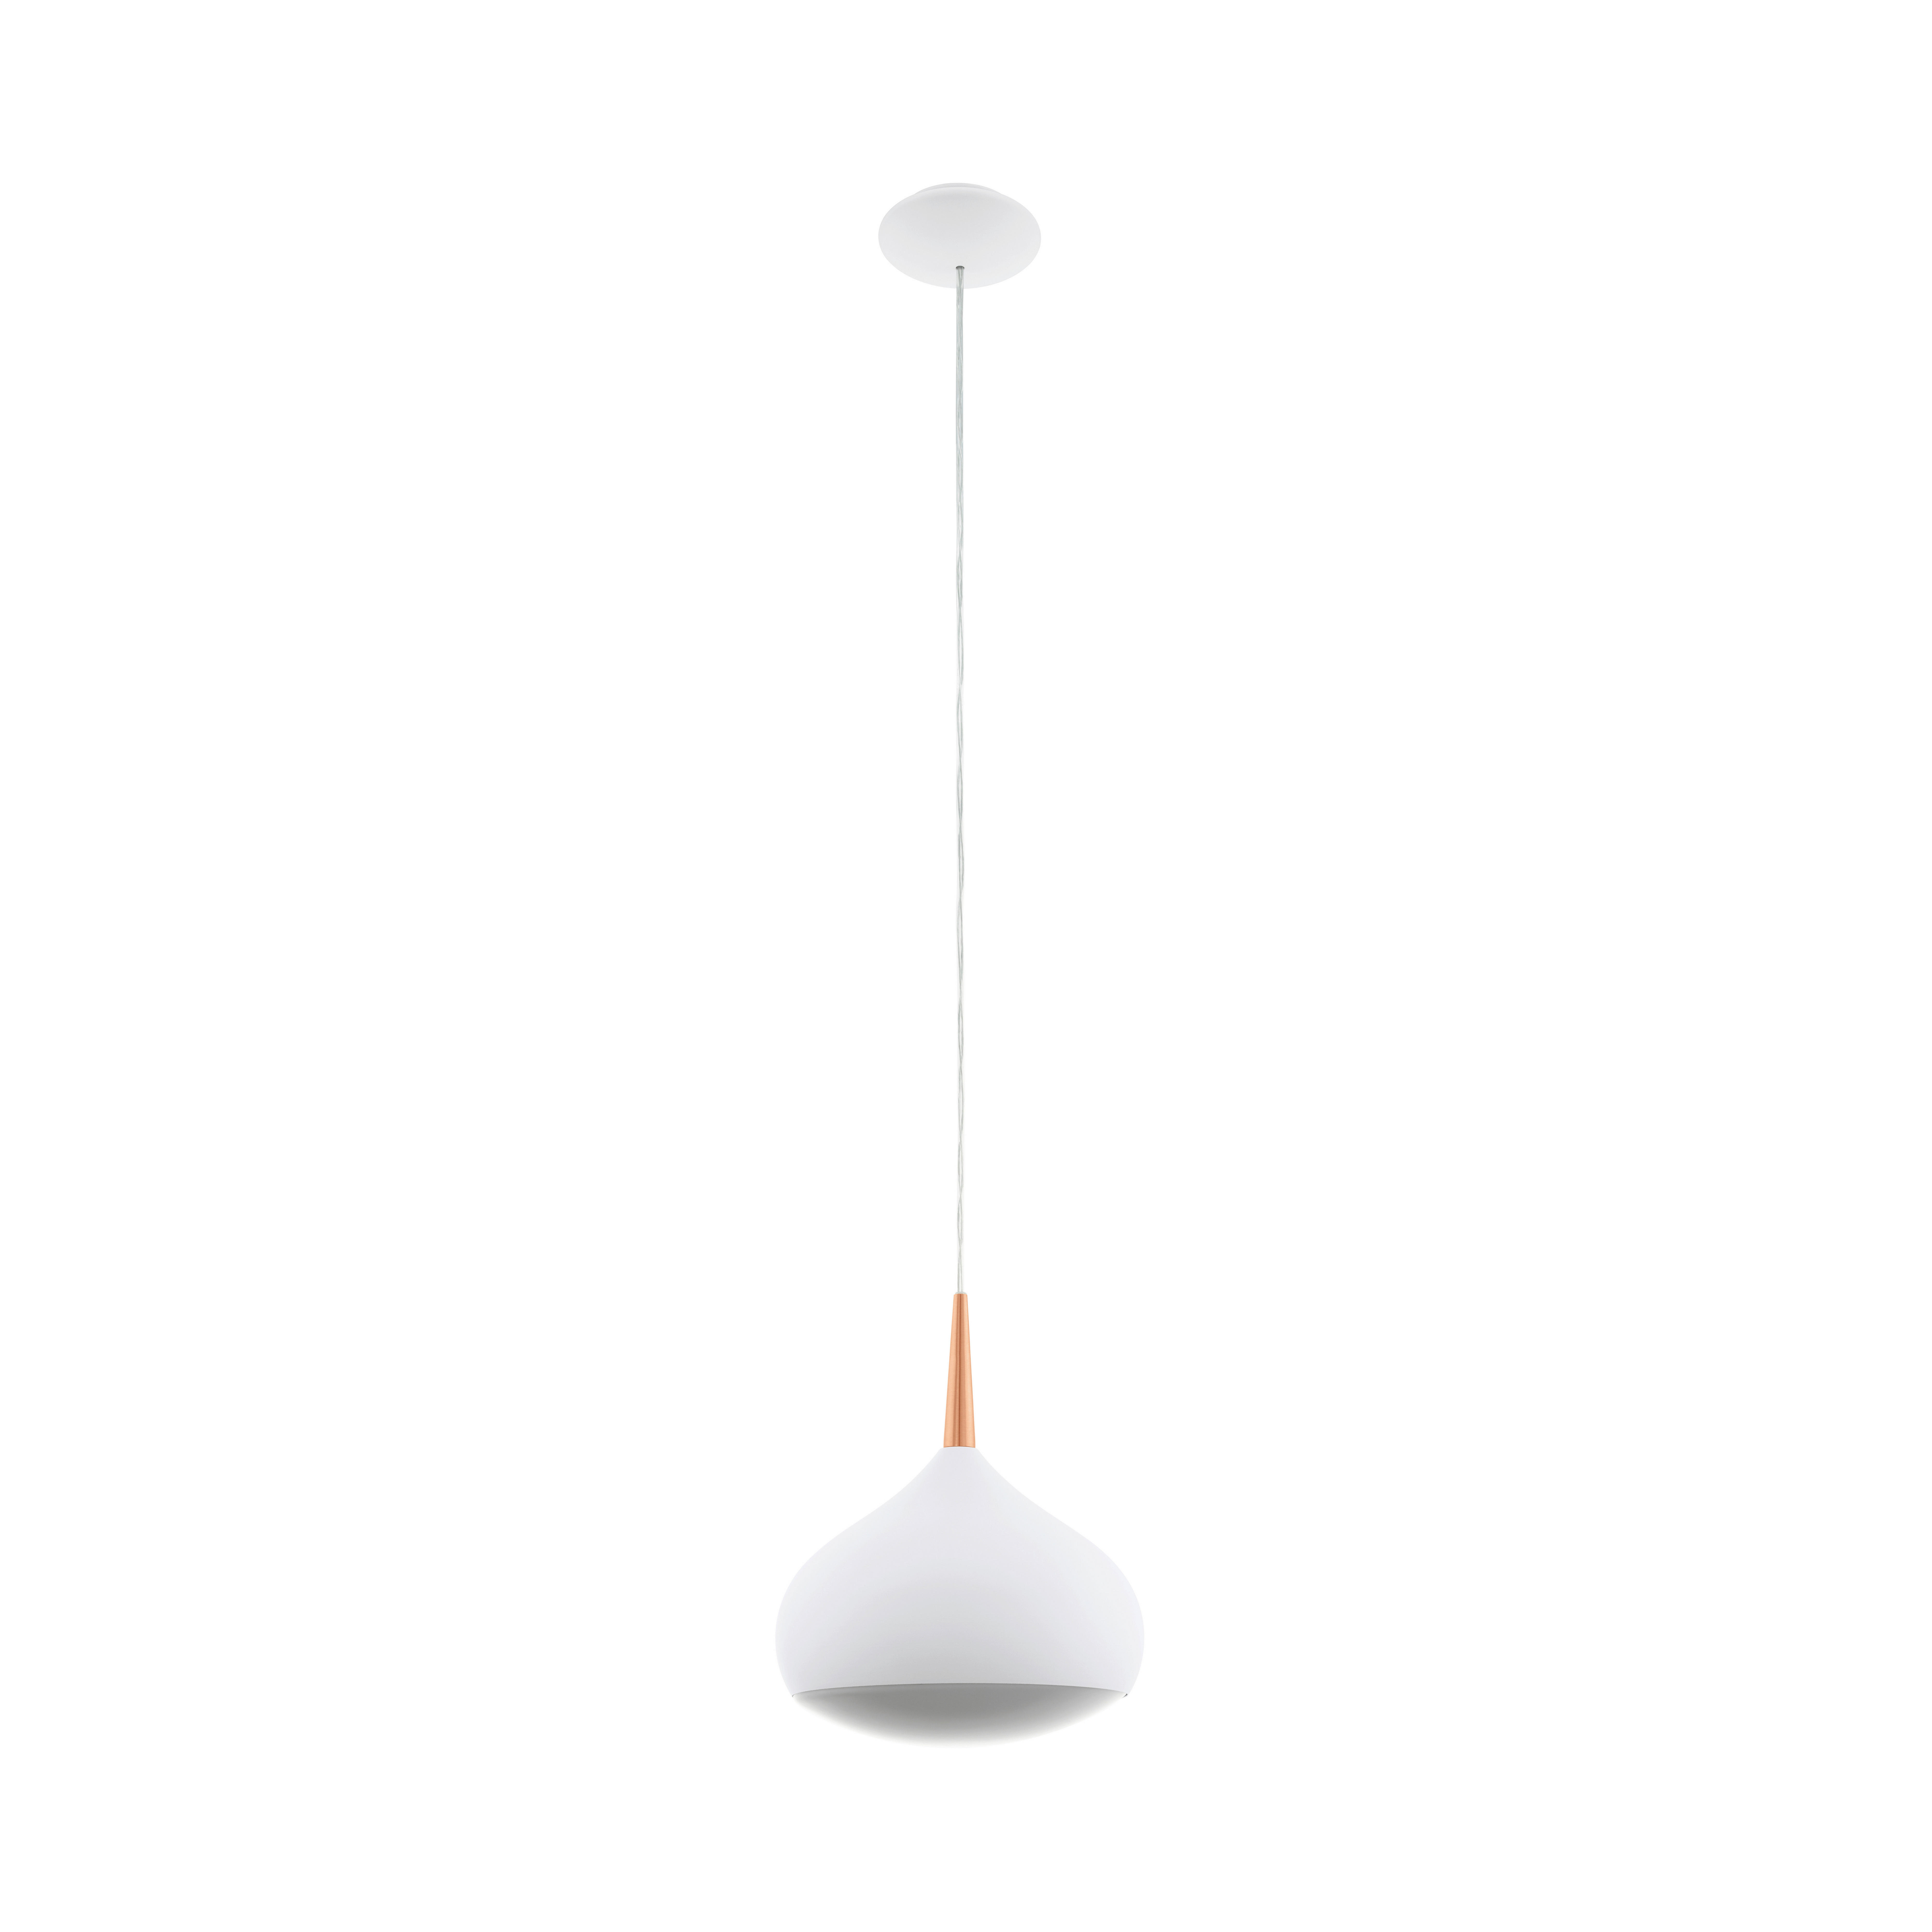 LED-HÄNGELEUCHTE COMBA-CONNECT  - Weiß/Kupferfarben, Design, Kunststoff/Metall (29/150cm)